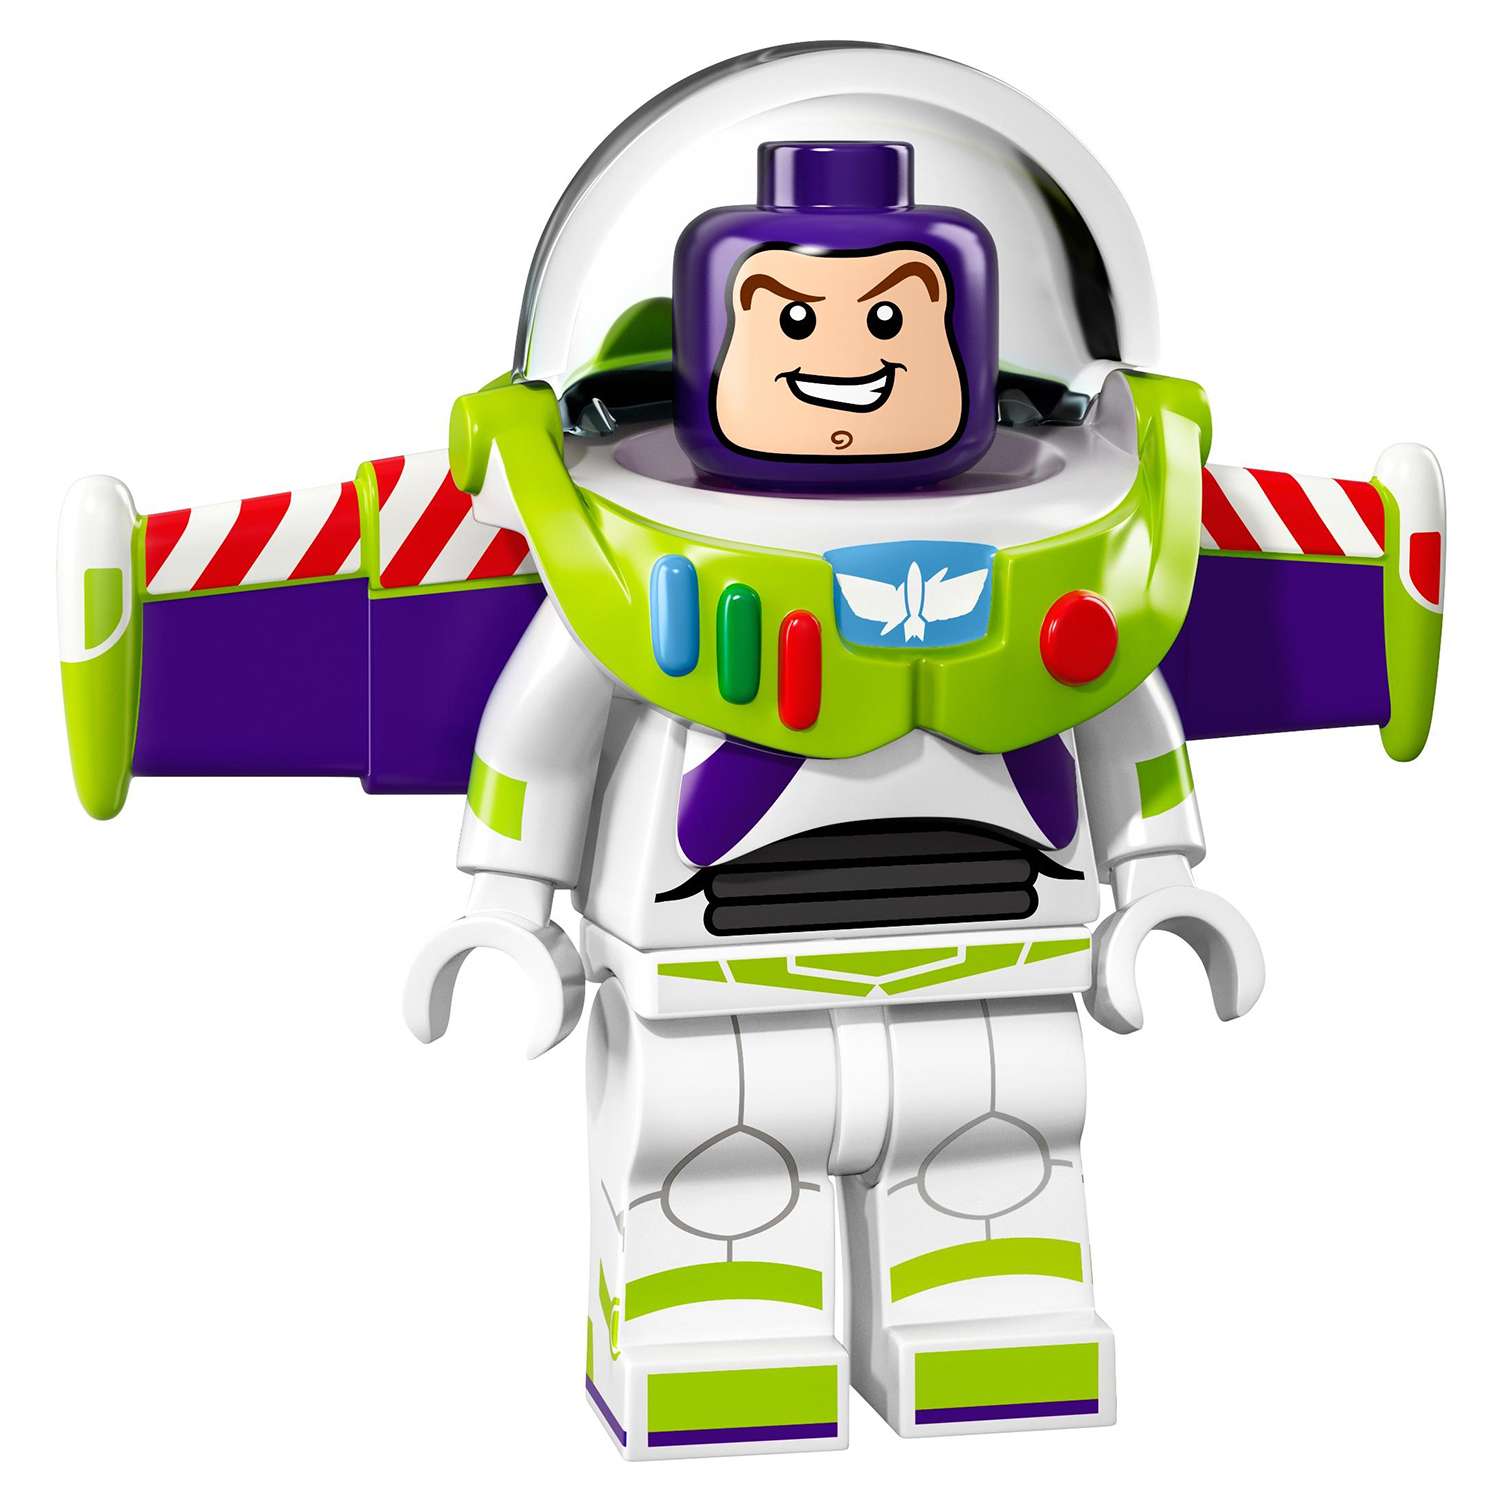 Конструктор LEGO Minifigures Минифигурки LEGO®, серия Дисней (71012) - фото 10